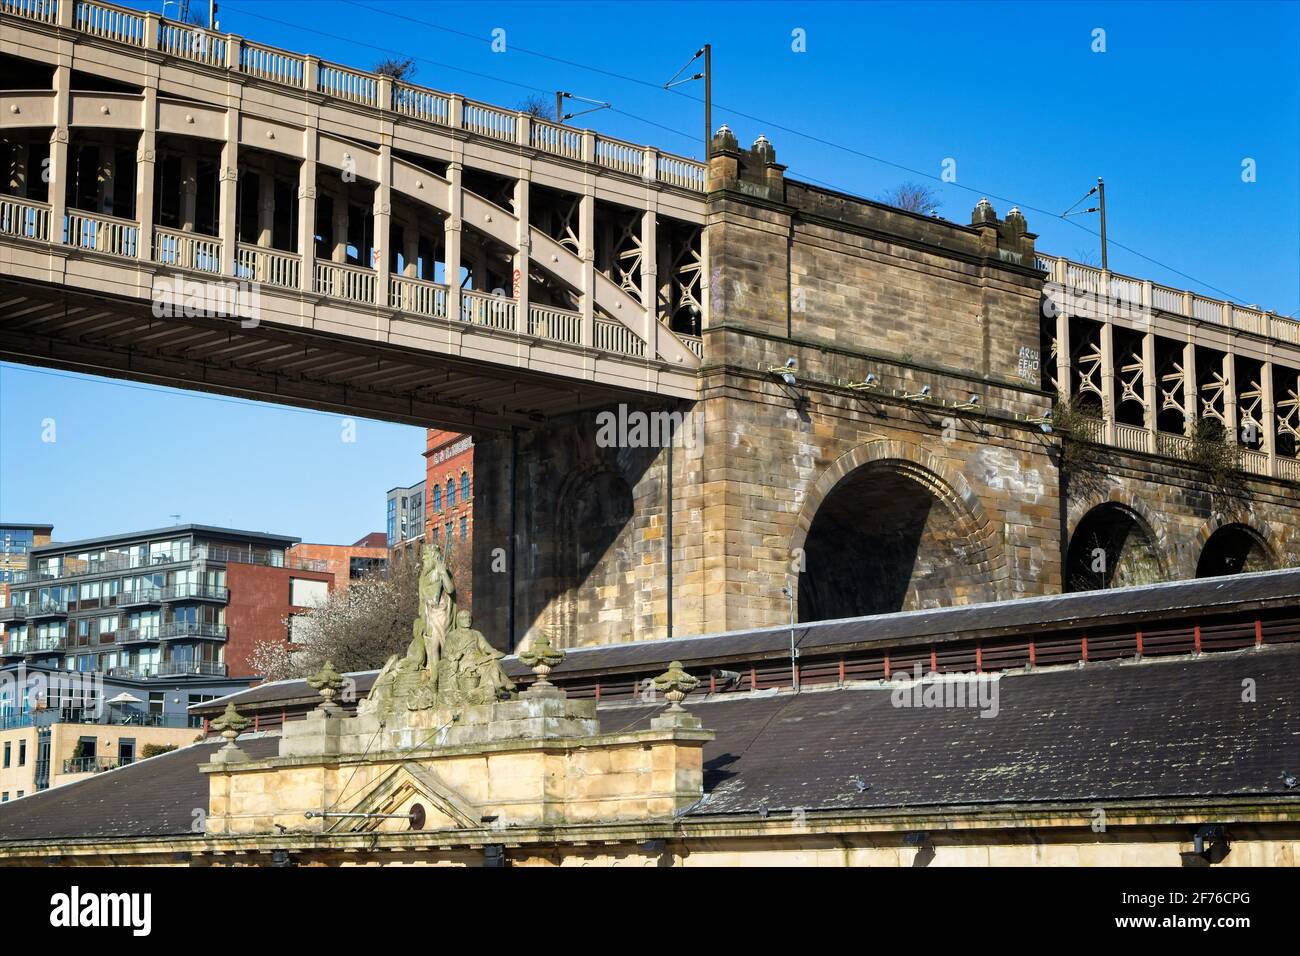 Die Hohe Brücke ist eine Straßen- und Eisenbahnbrücke überspannt den Fluss Tyne zwischen Newcastle upon Tyne und Gateshead in Nordost-england. Stockfoto